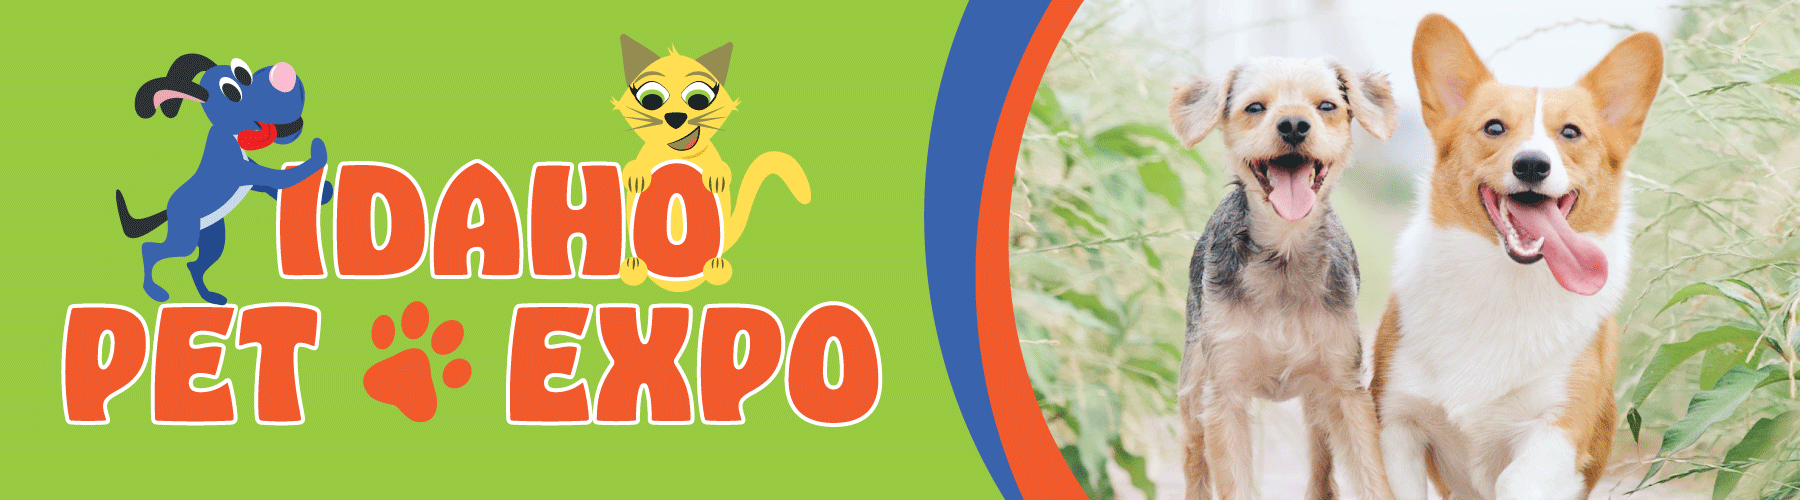 Idaho Pet Expo